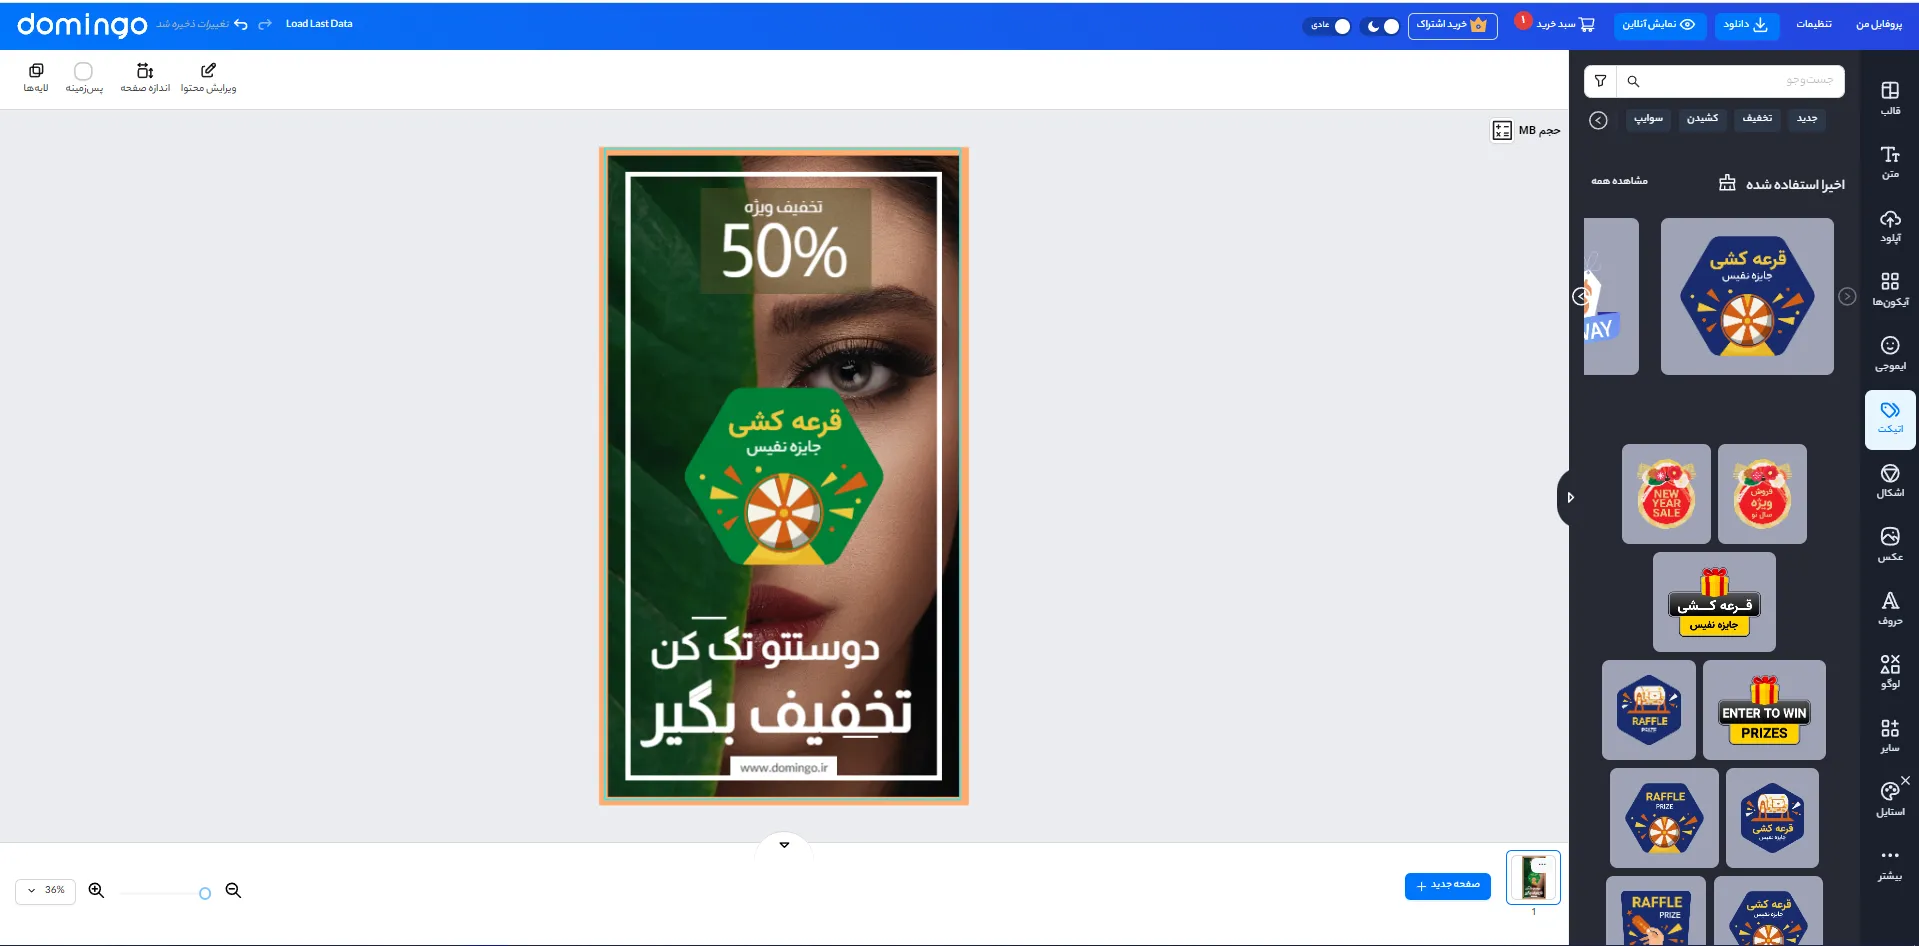 بهترین برنامه استوری ساز با فونت فارسی برای بازاریابی آرایشگاه در اینستاگرام